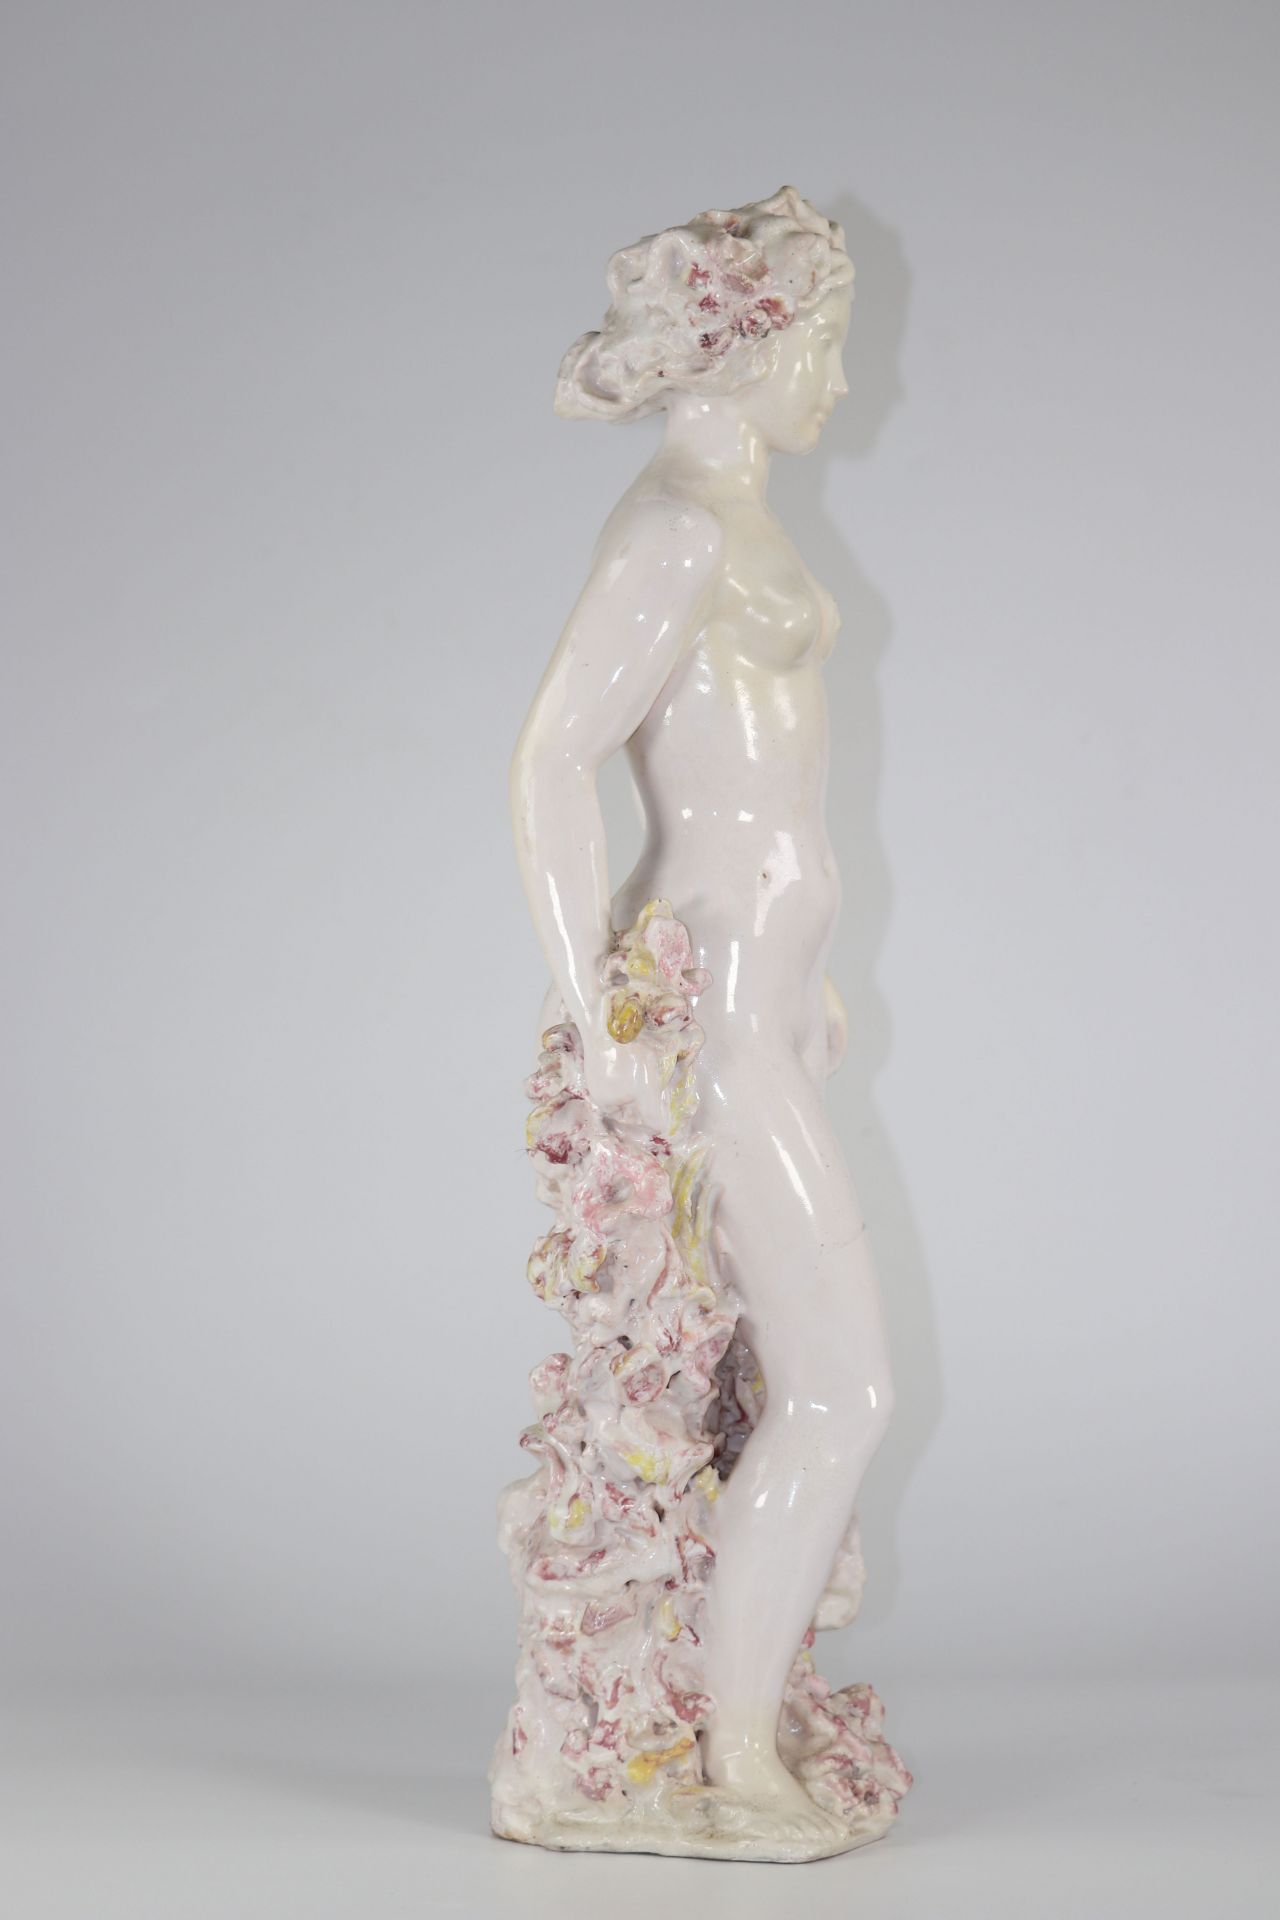 PAUL POUCHOL (1904-1963) Important enamelled ceramic sculpture - Image 3 of 5